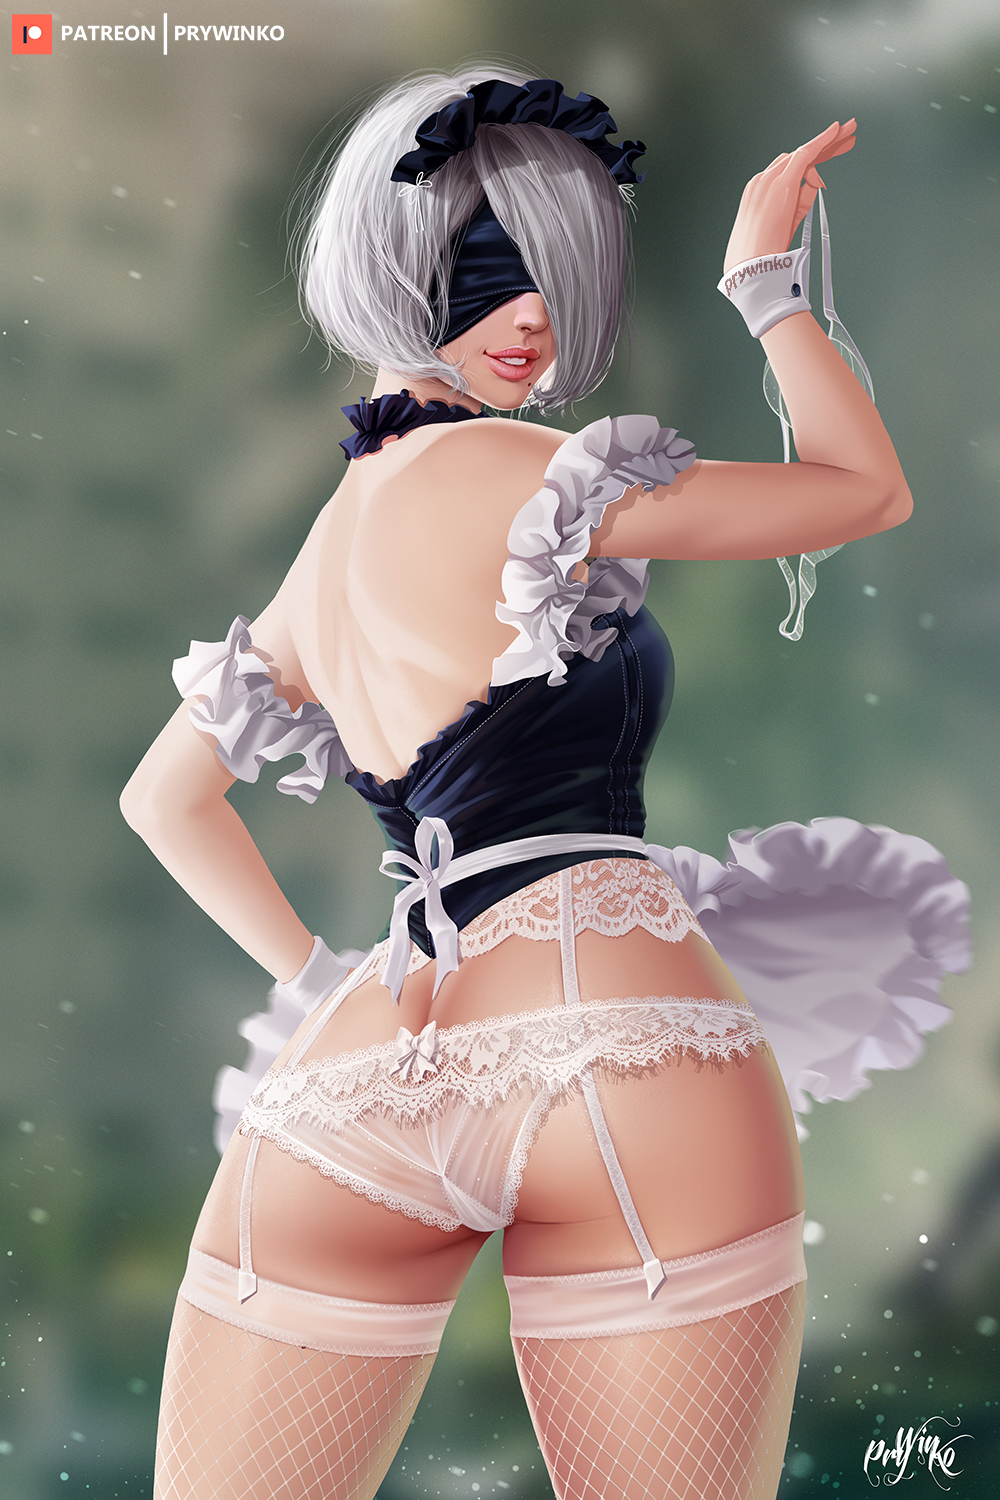 Anime 1000x1500 anime girls portrait display Nier: Automata 2B (Nier: Automata) Prywinko ass lingerie stockings fantasy girl white stockings